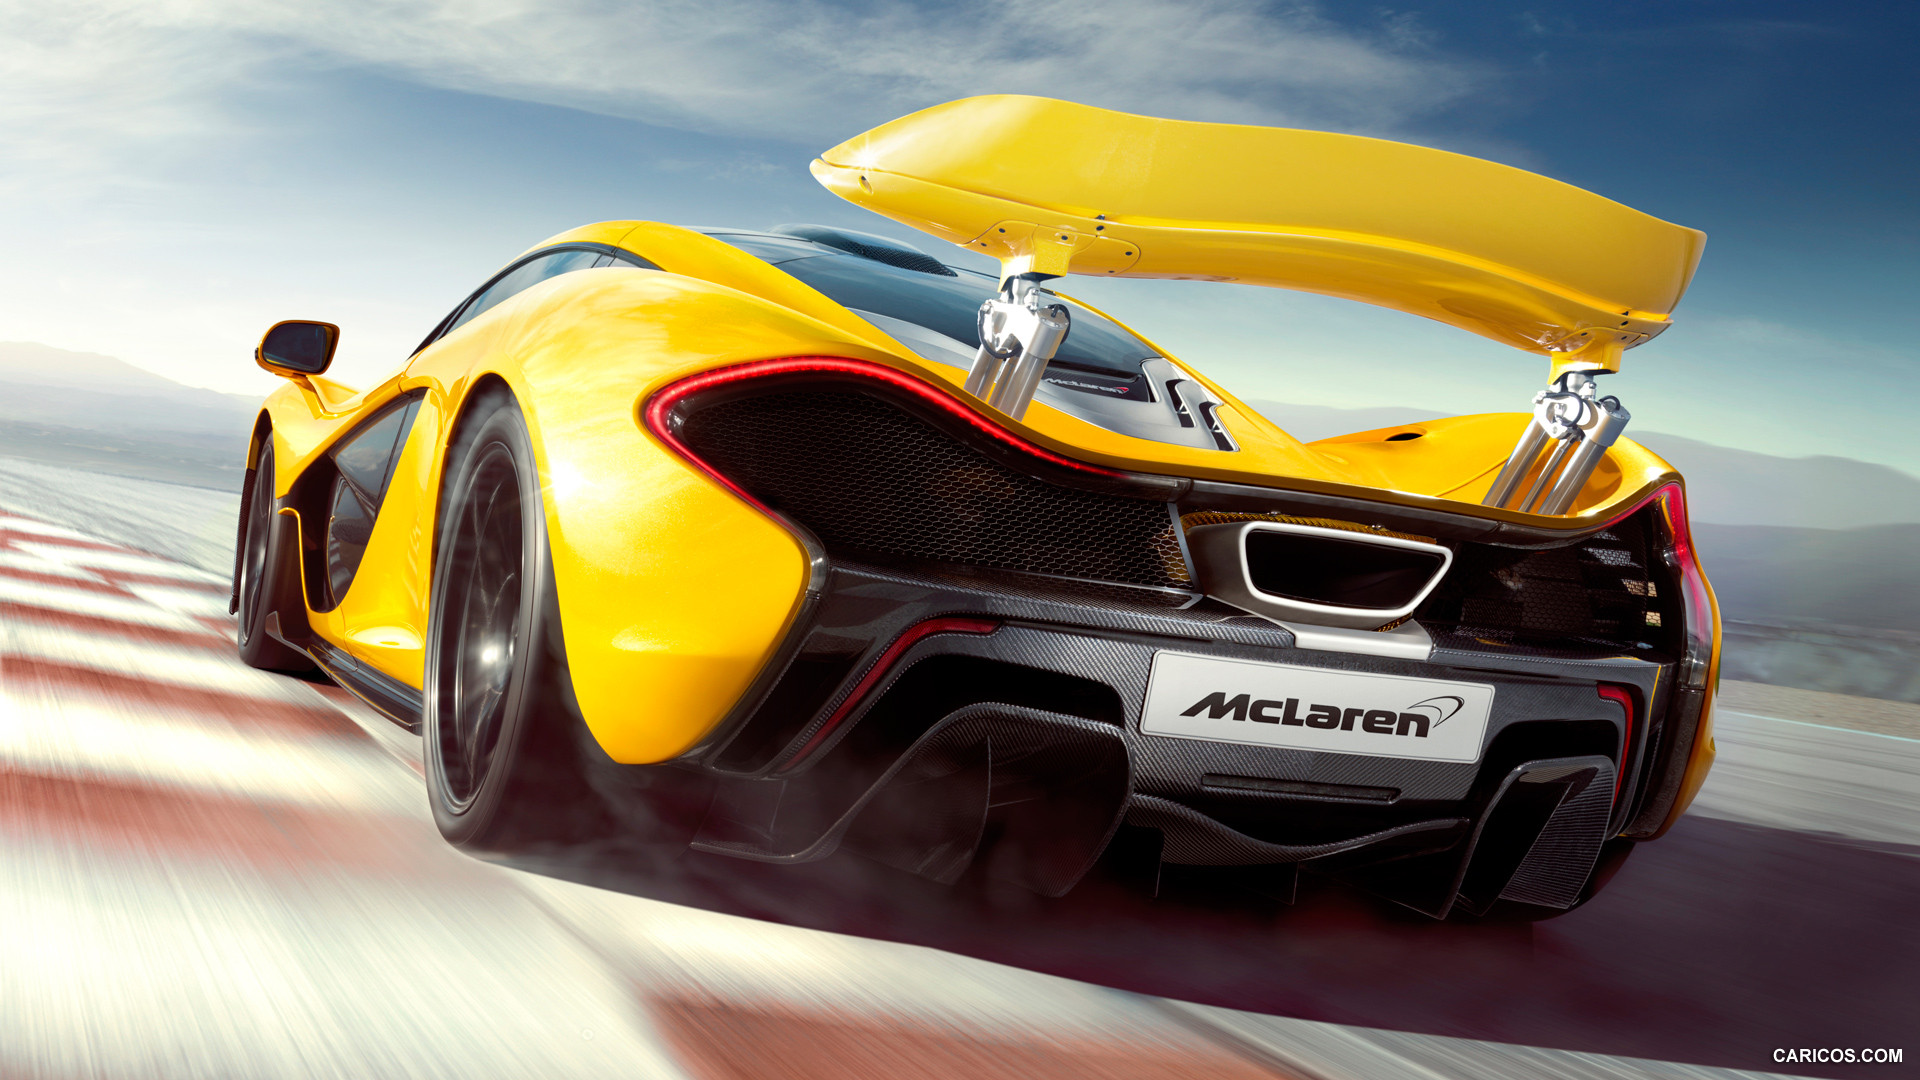 2014 McLaren P1  - Spoiler, #52 of 126